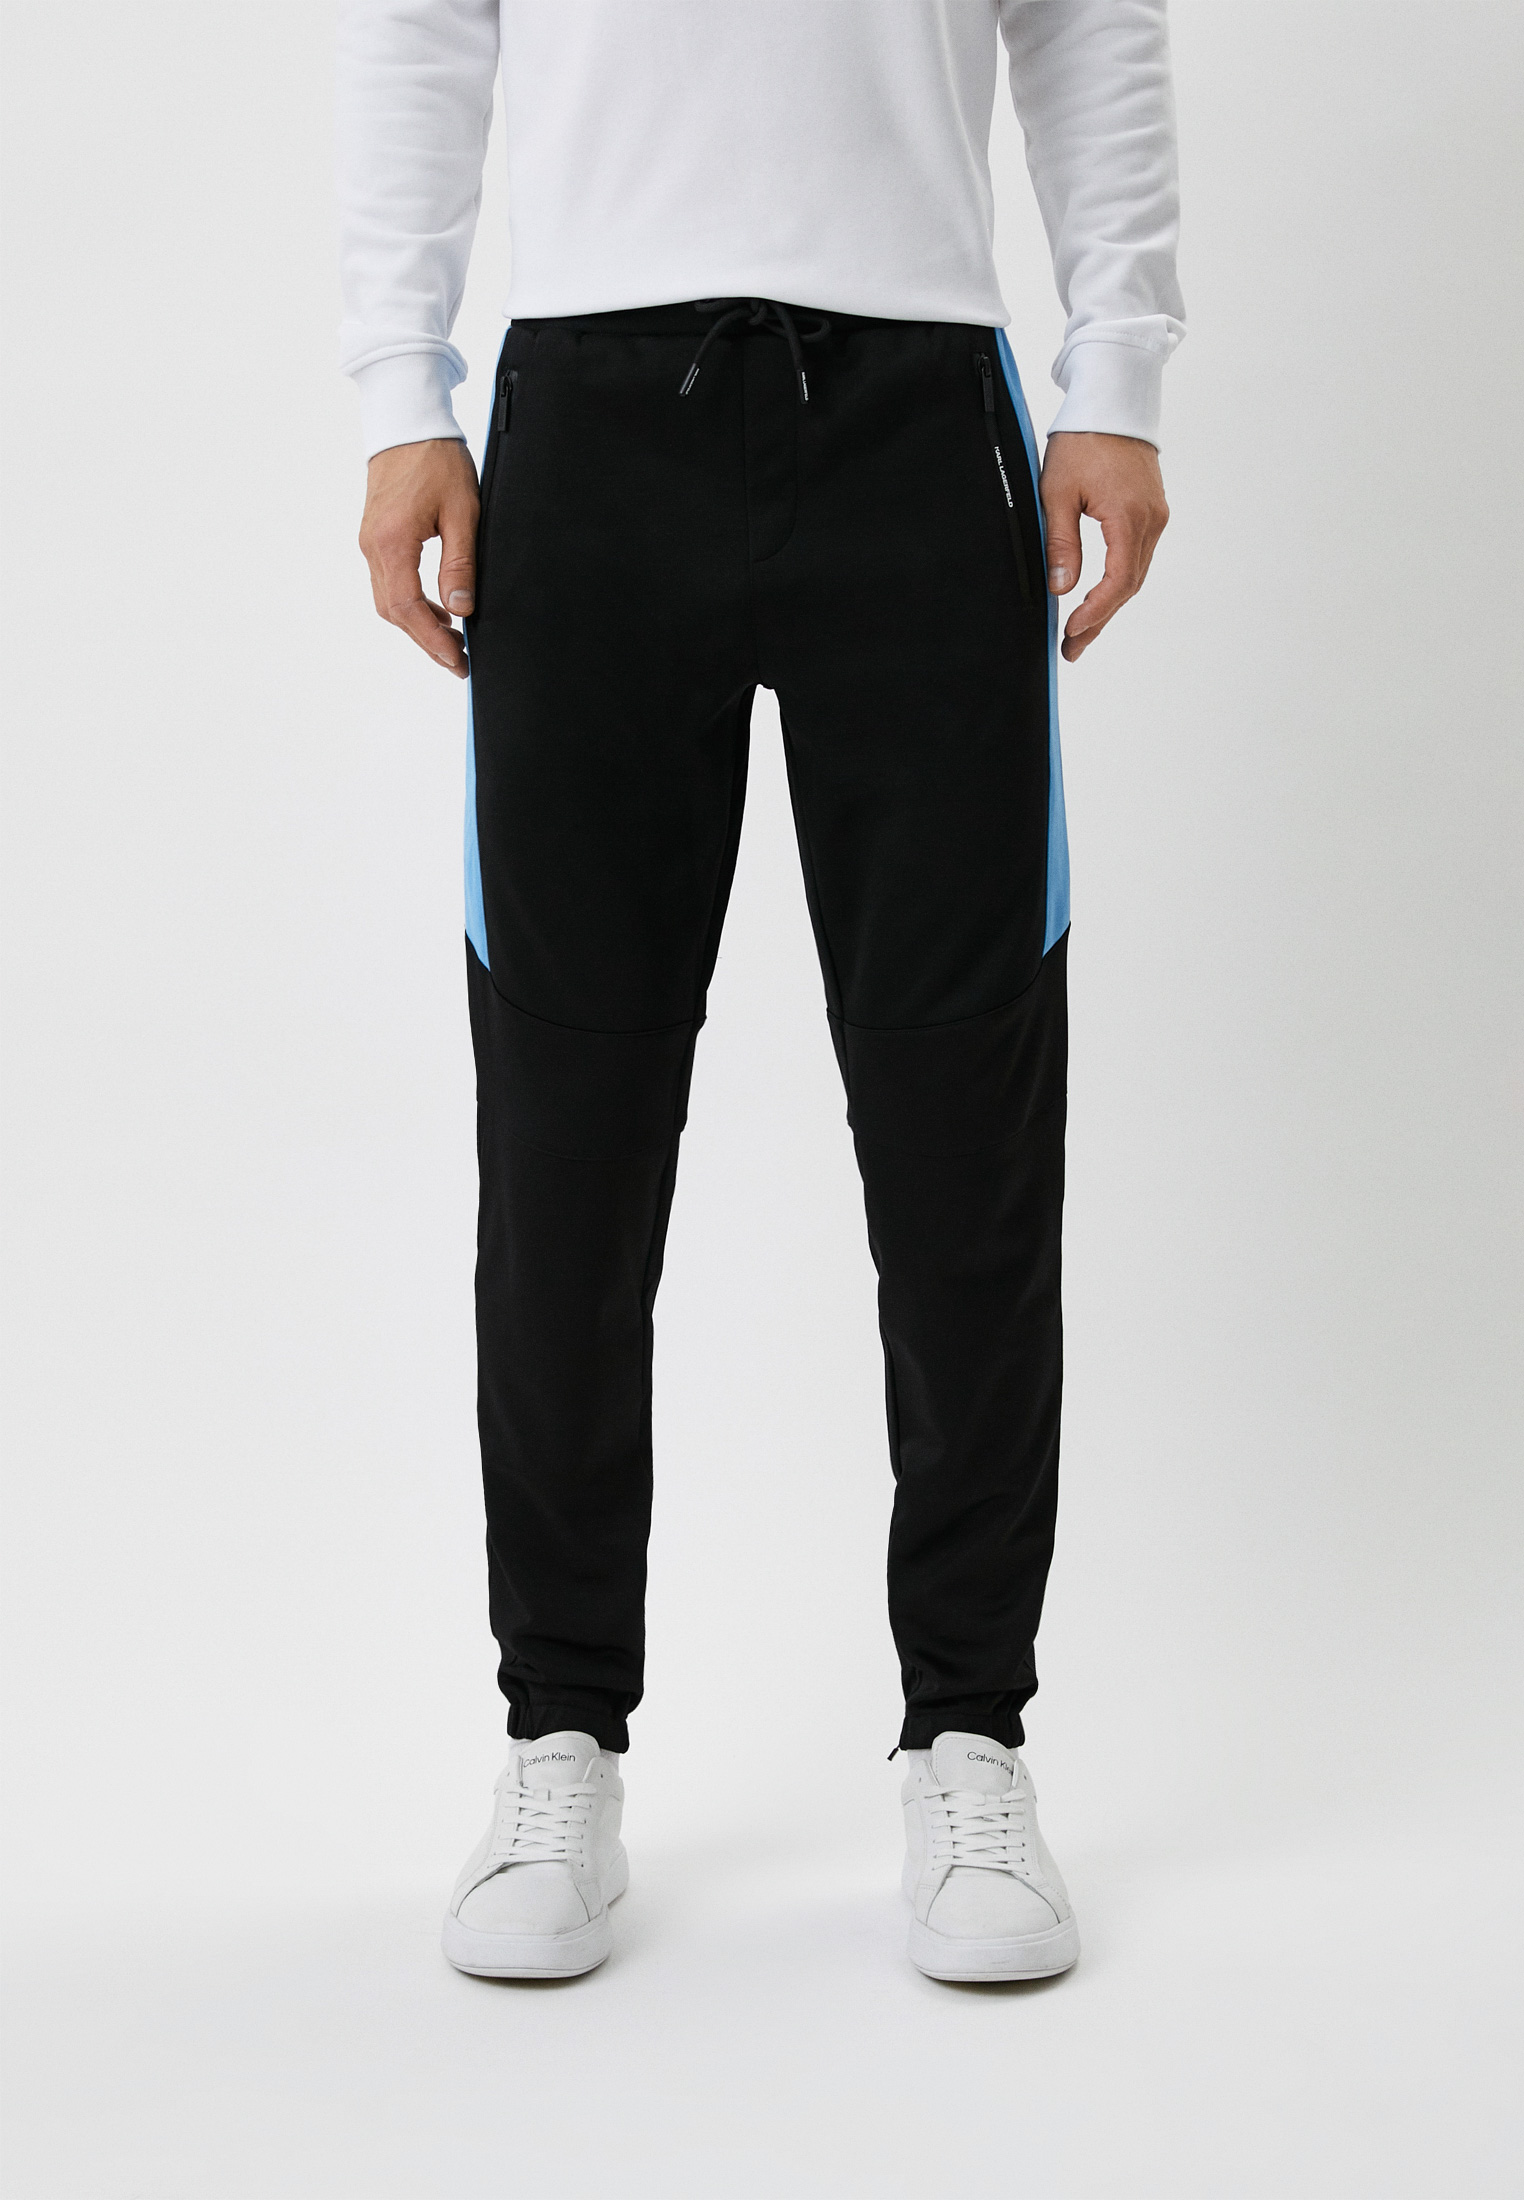 Мужские спортивные брюки Karl Lagerfeld (Карл Лагерфельд) 705083-523905: изображение 1